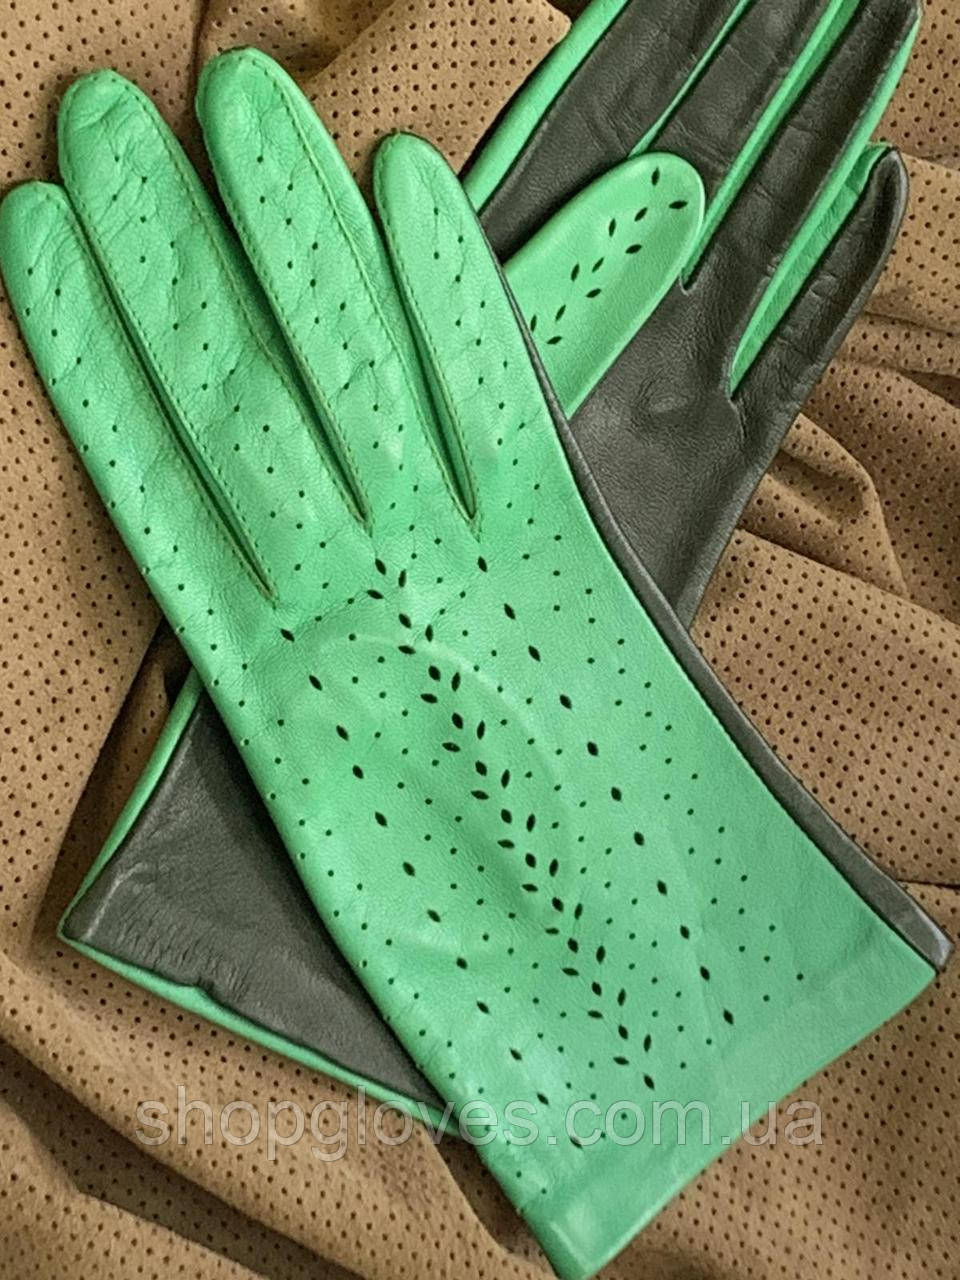 Жіночі шкіряні рукавички без підкладки з натуральної шкіри ягняти. Колір салатовий+темно зелений. Розмір 7"/19 см